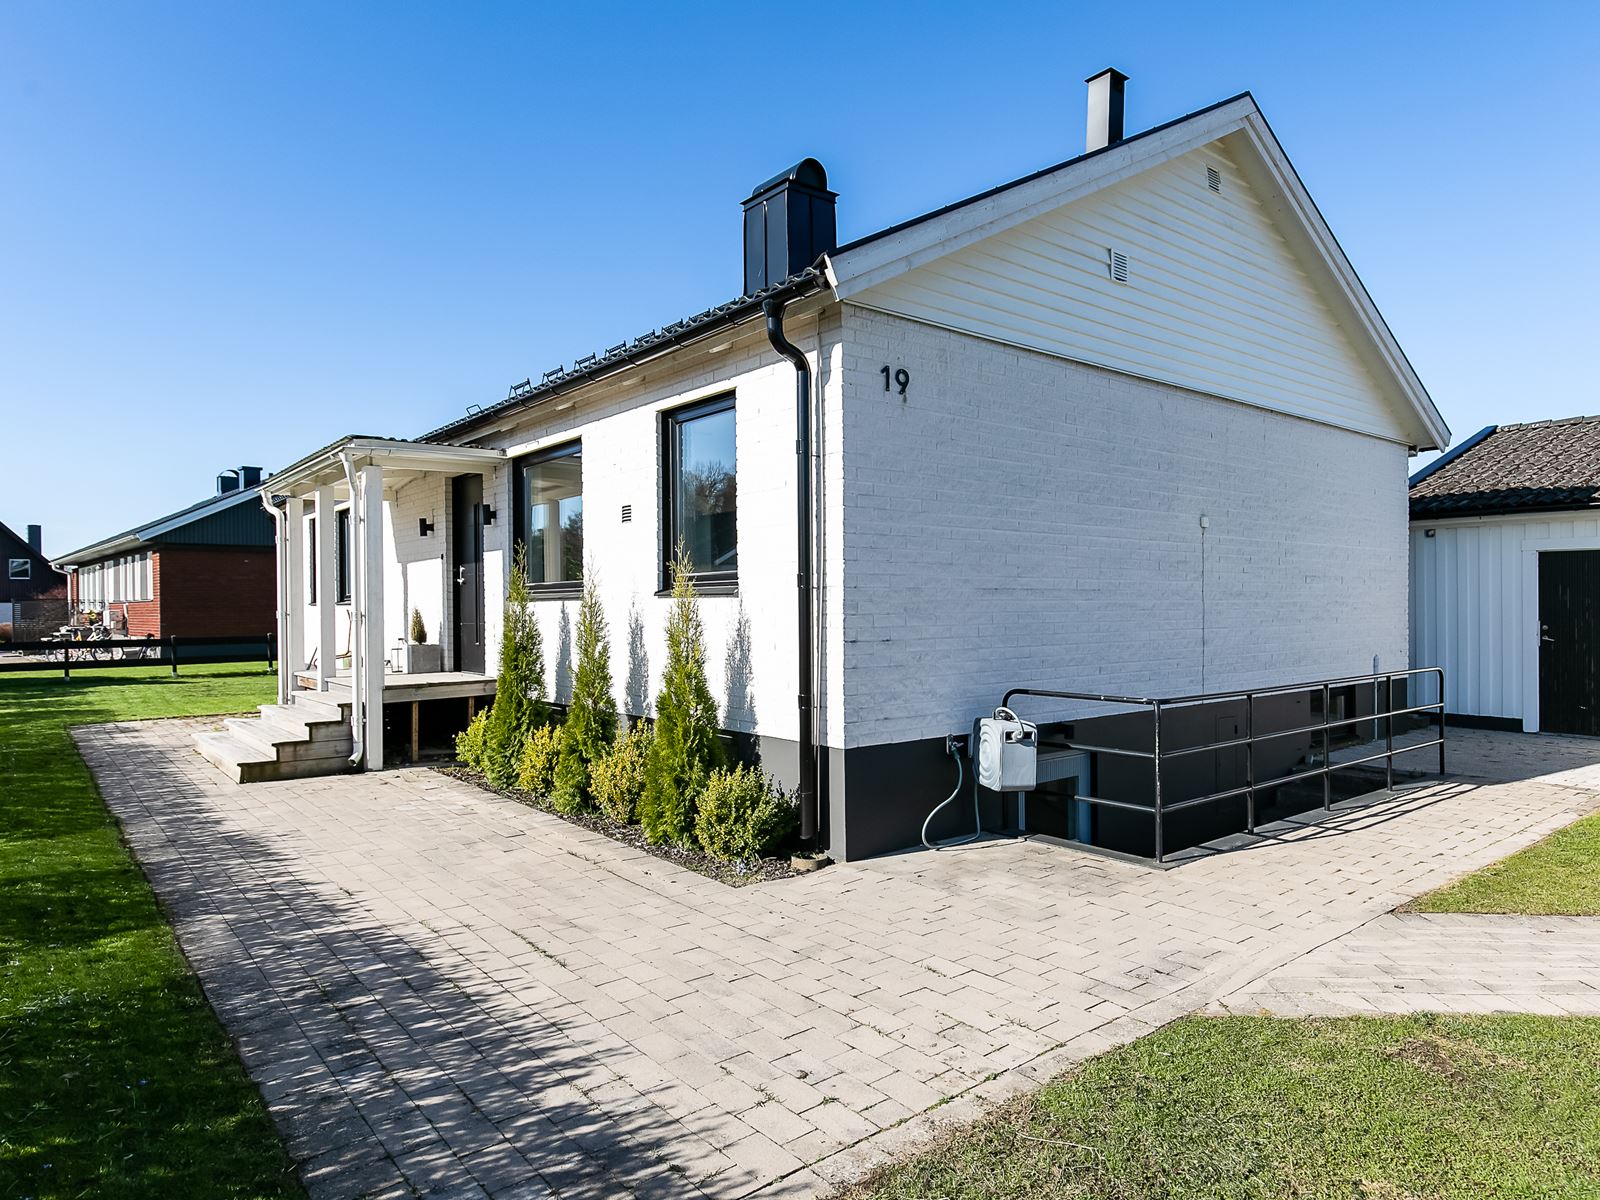 Villa. Egnahemsgatan 19 - Bjurfors